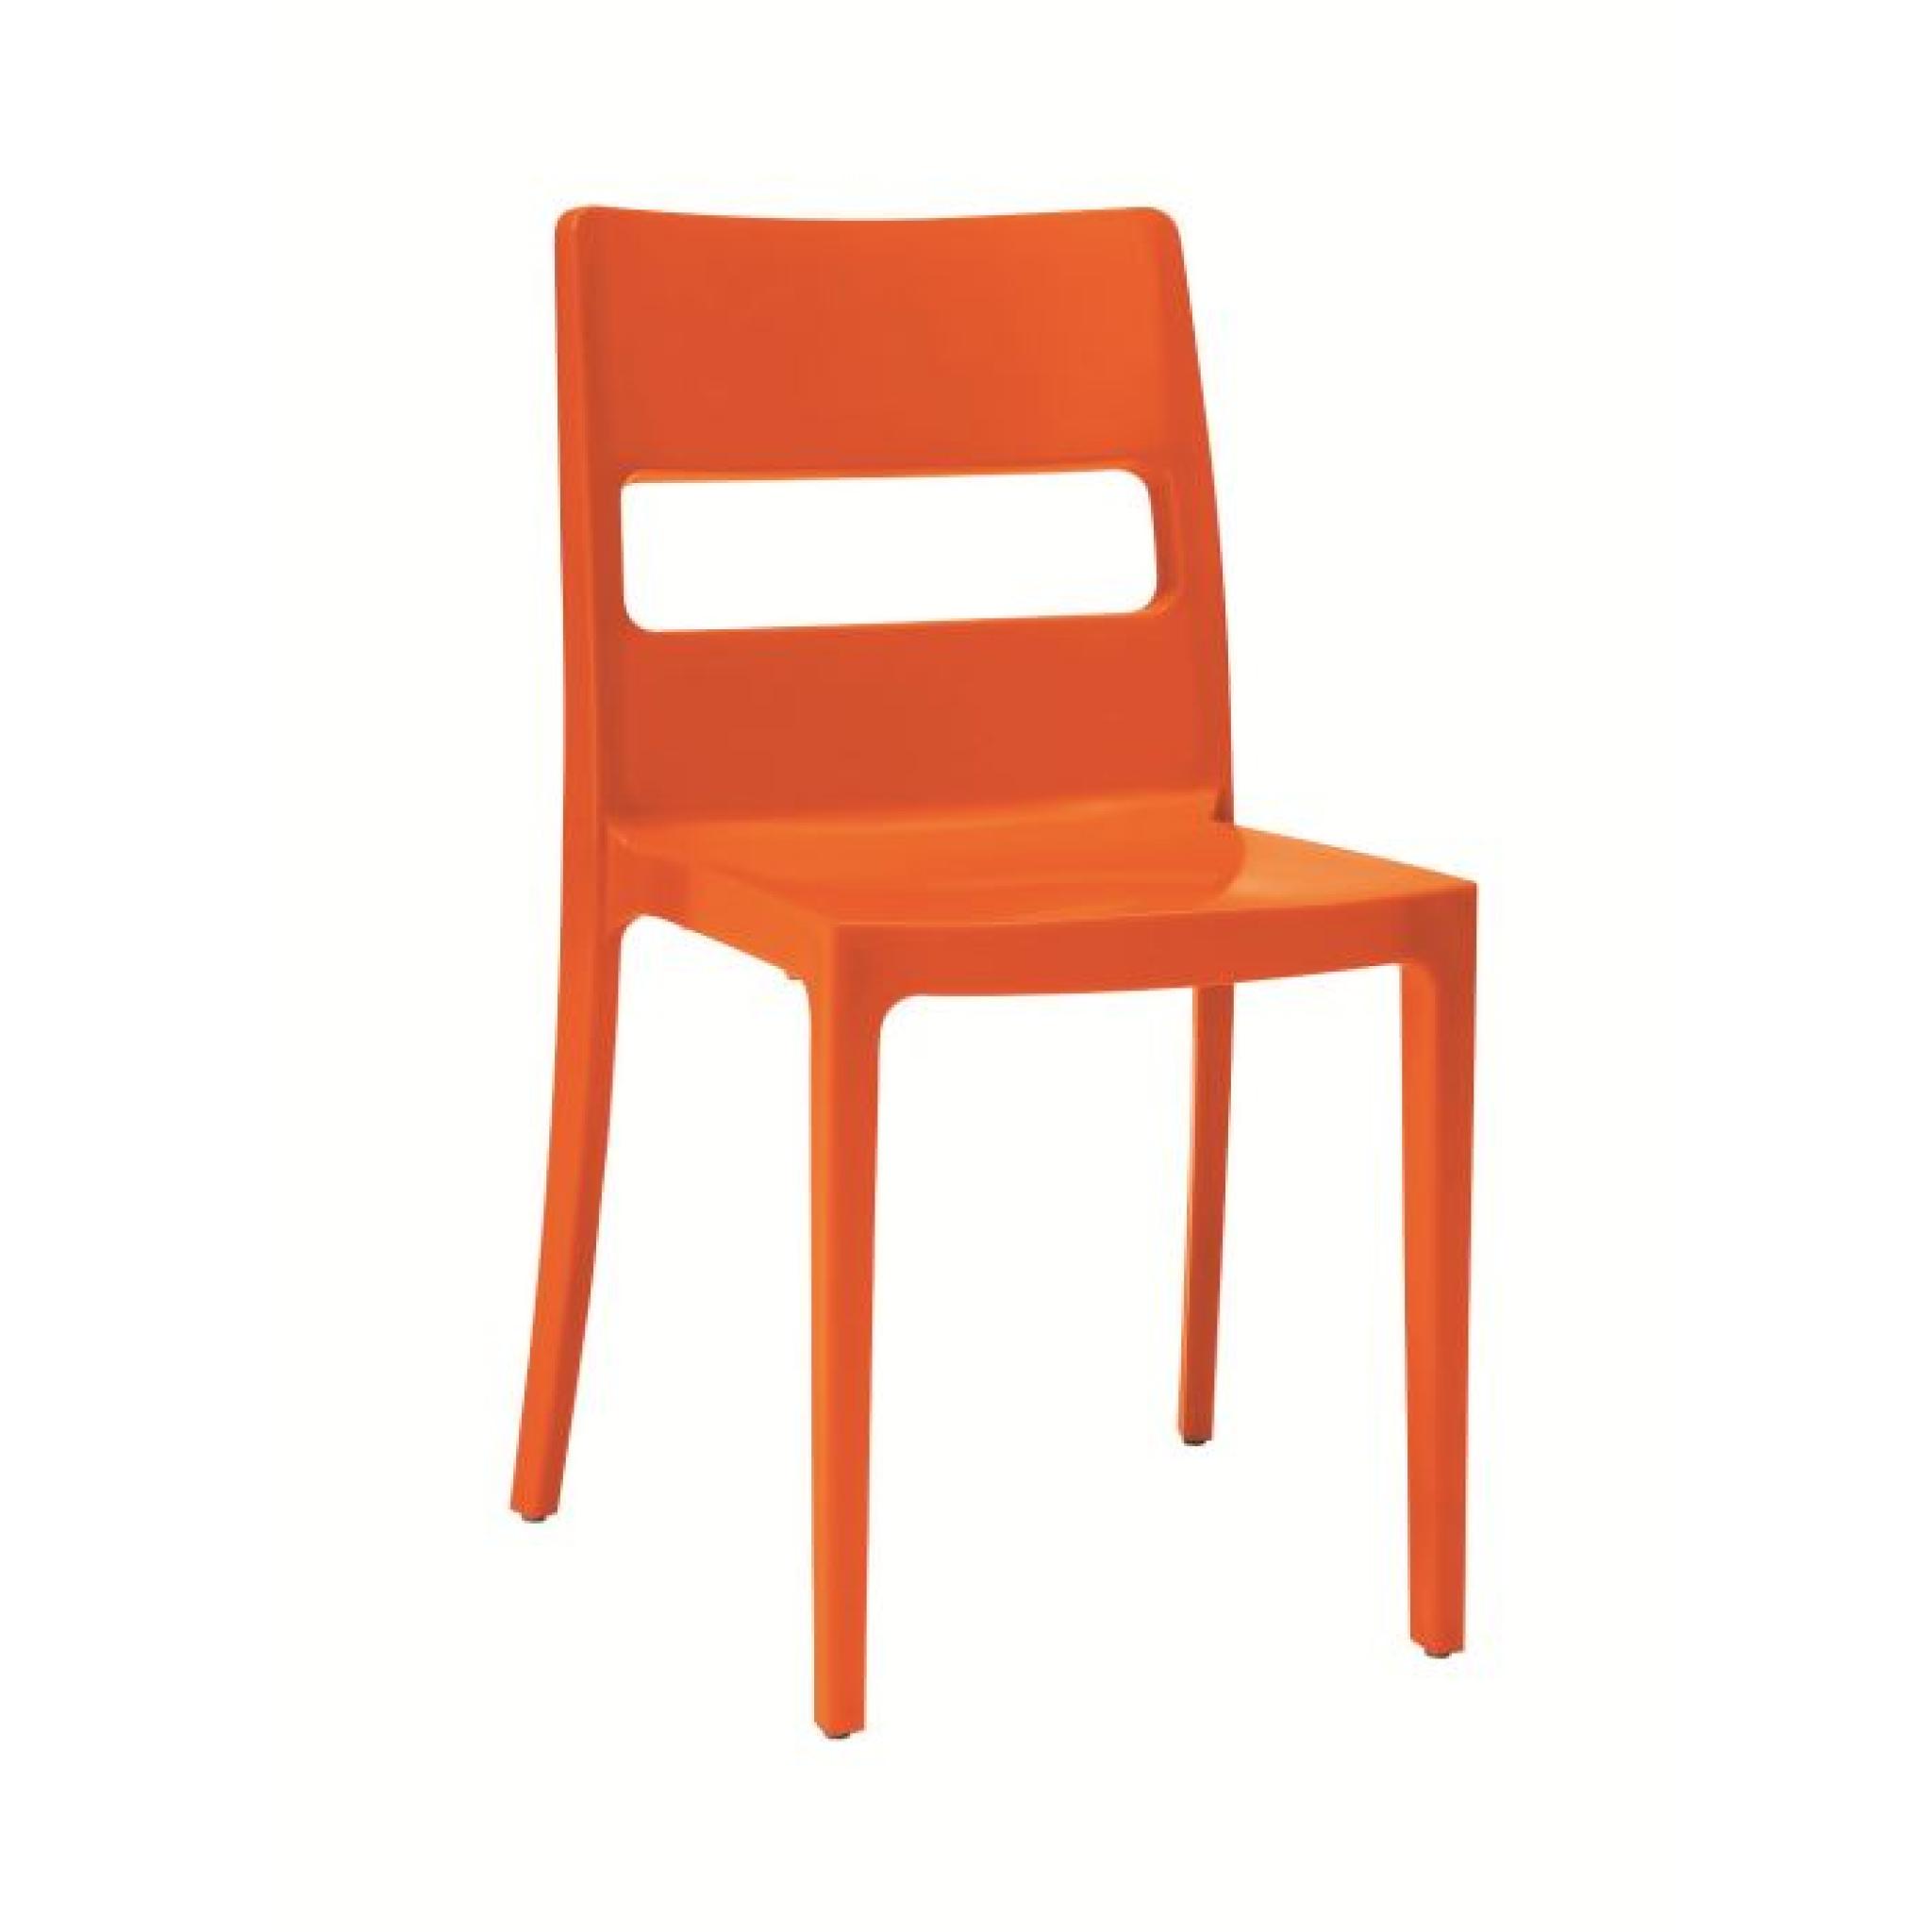 6 Chaises oranges design - SAI - Lot de 6 - déco